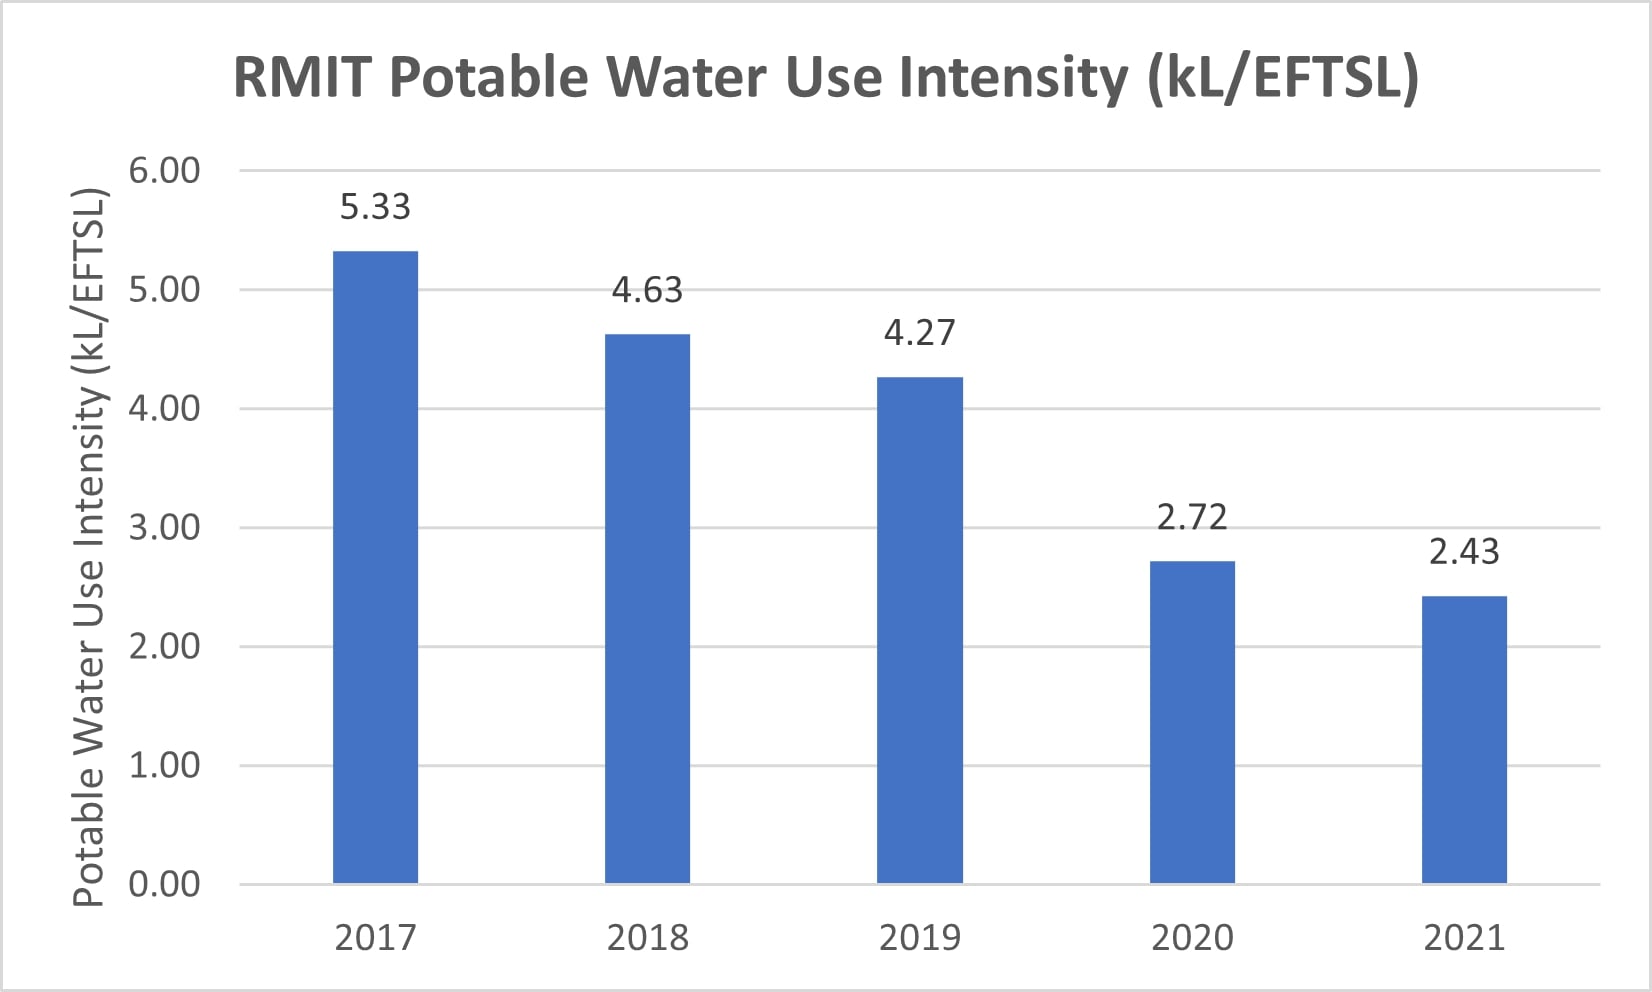 Chart showing RMIT water use intensity between 2017 and 2021. In 2017, RMIT measured 5.33 kL/EFTSL. In 2018, it measured 4.63 kL/EFTSL. In 2019, 4.27 kL/EFTSL. In 2020, 2.72 kL/EFTSL. And in 2021, it measured 2.43kL/EFTSL.